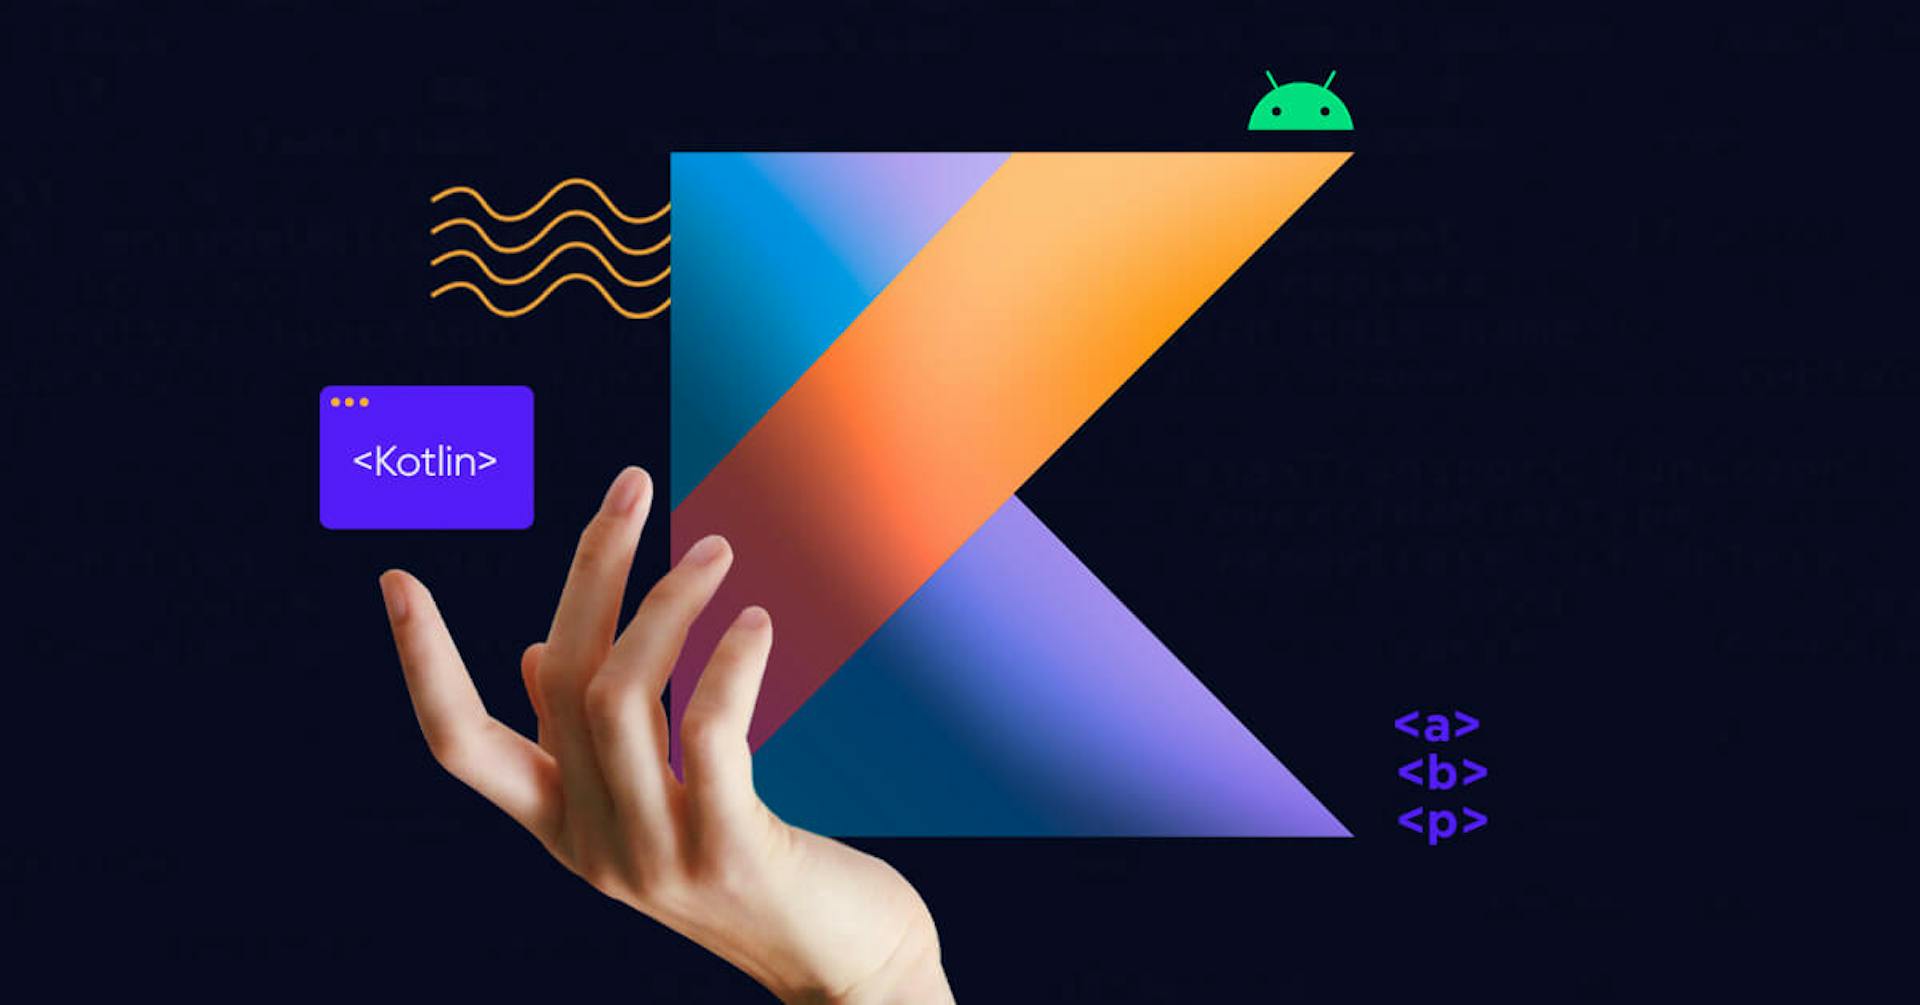 ¿Qué es Kotlin? El nuevo lenguaje de programación de Android que necesitas conocer